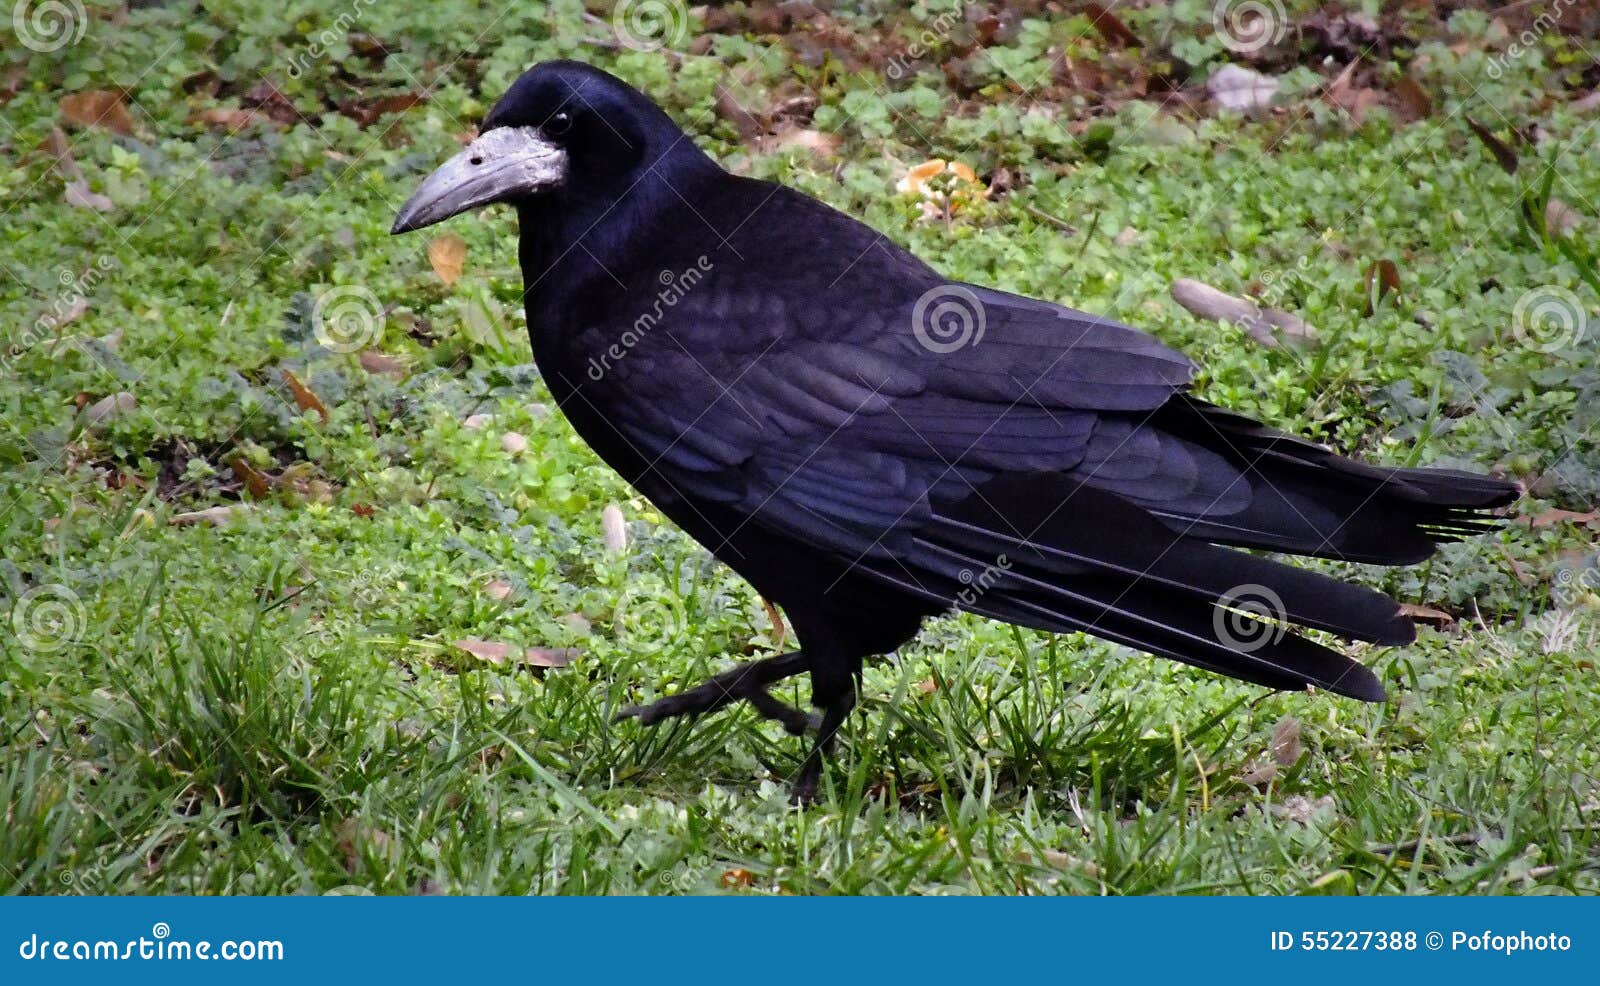 walking raven